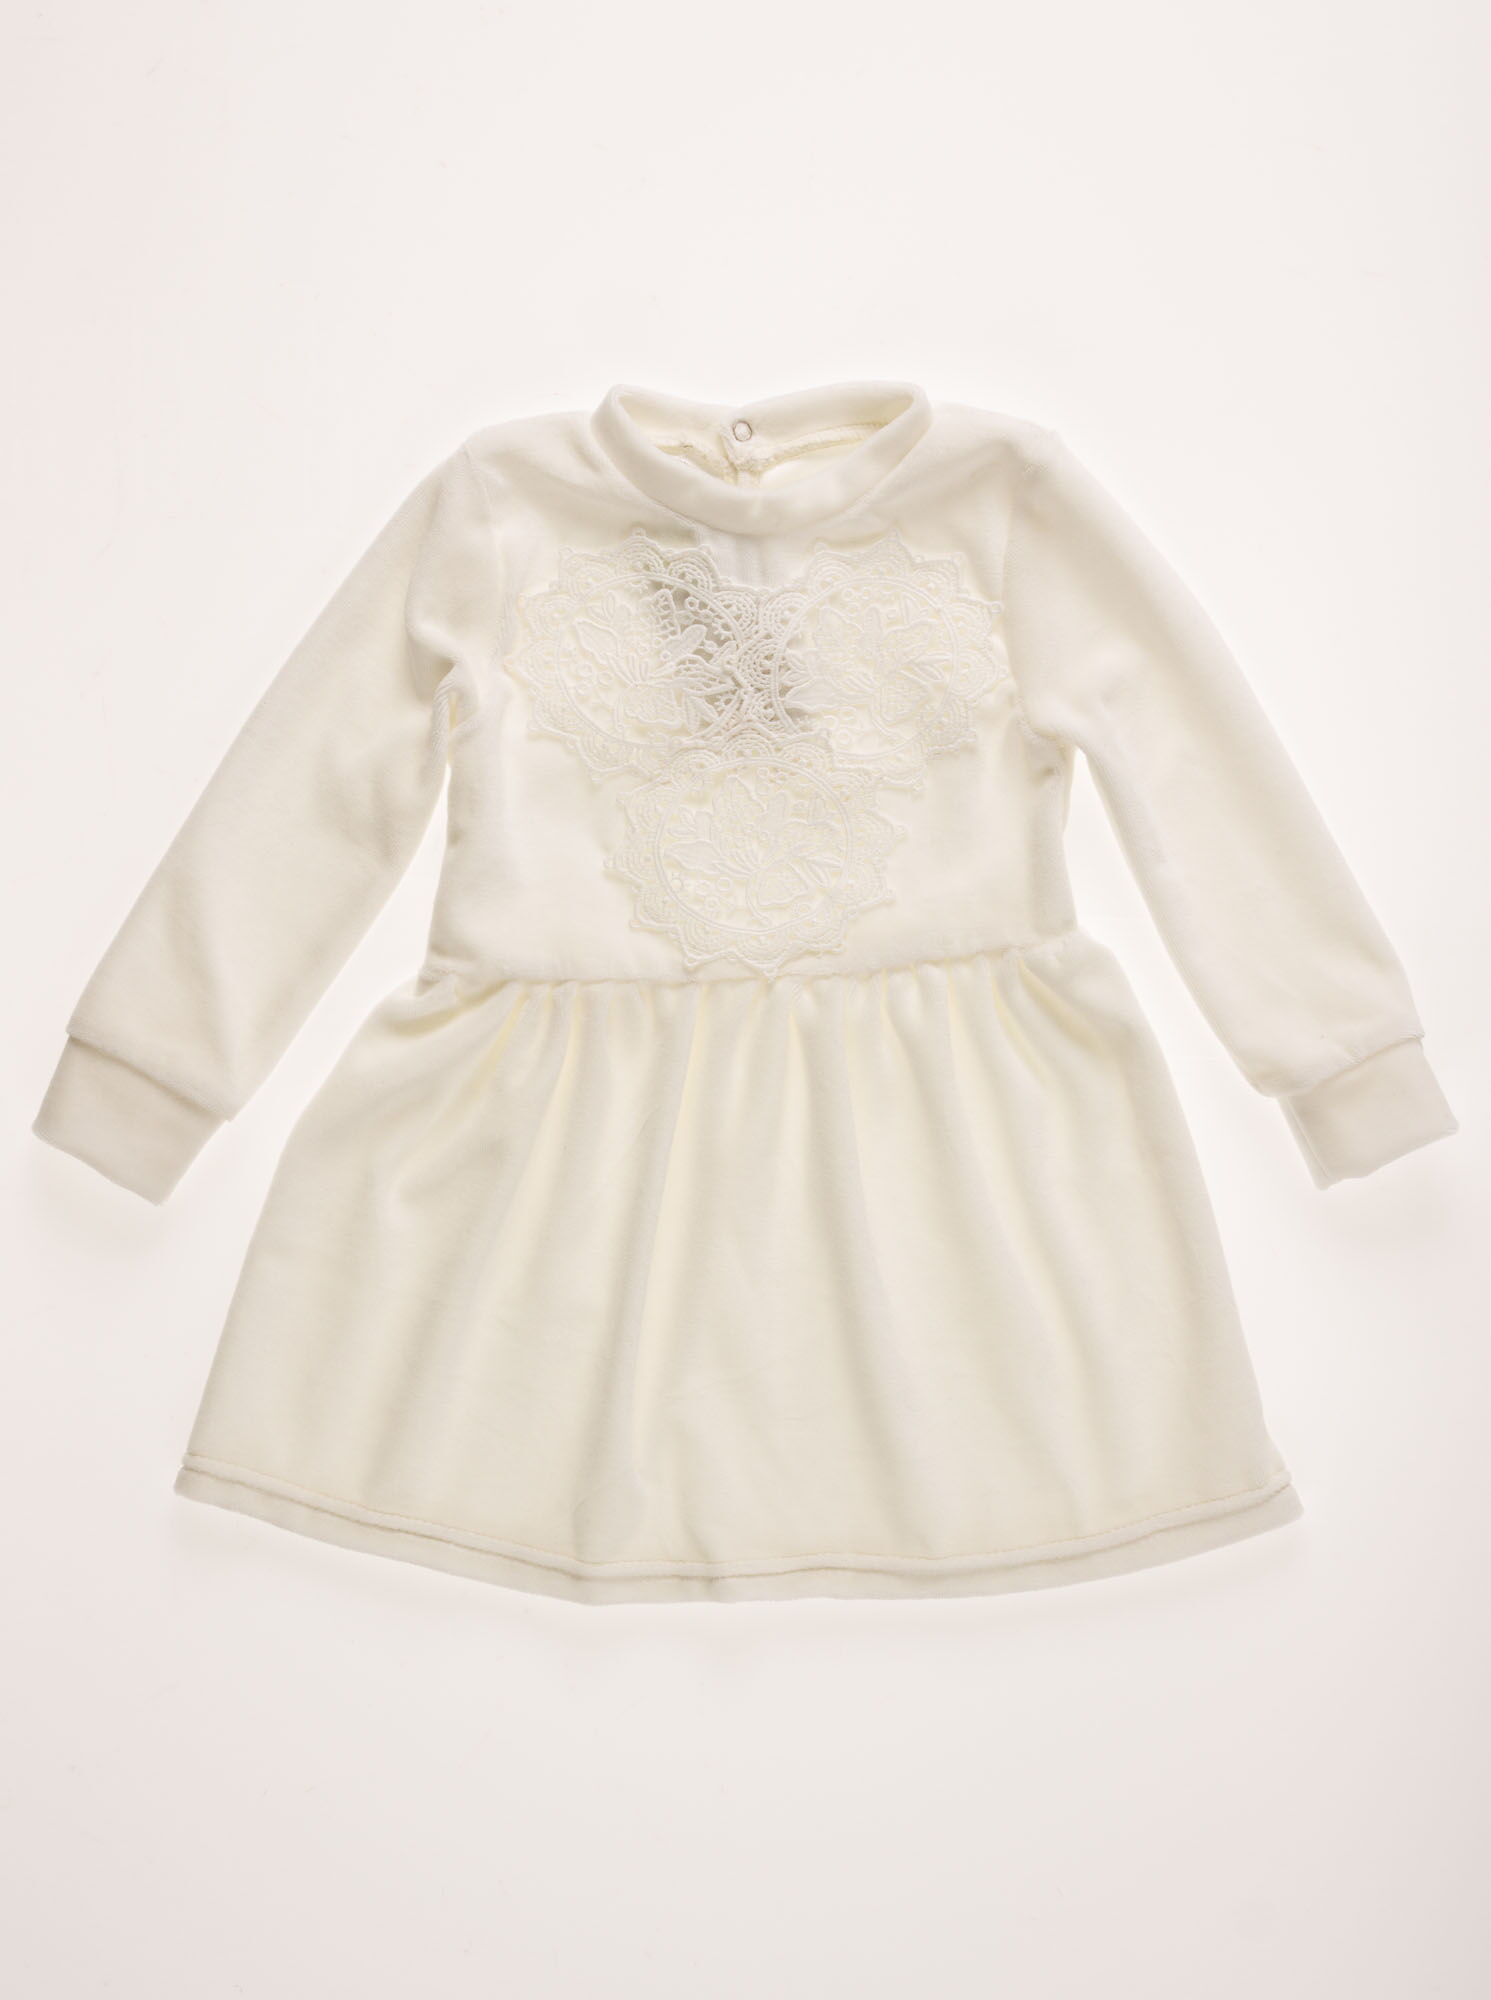 Платье велюровое для девочки Family Pupchik Кружево белое 9009 - цена